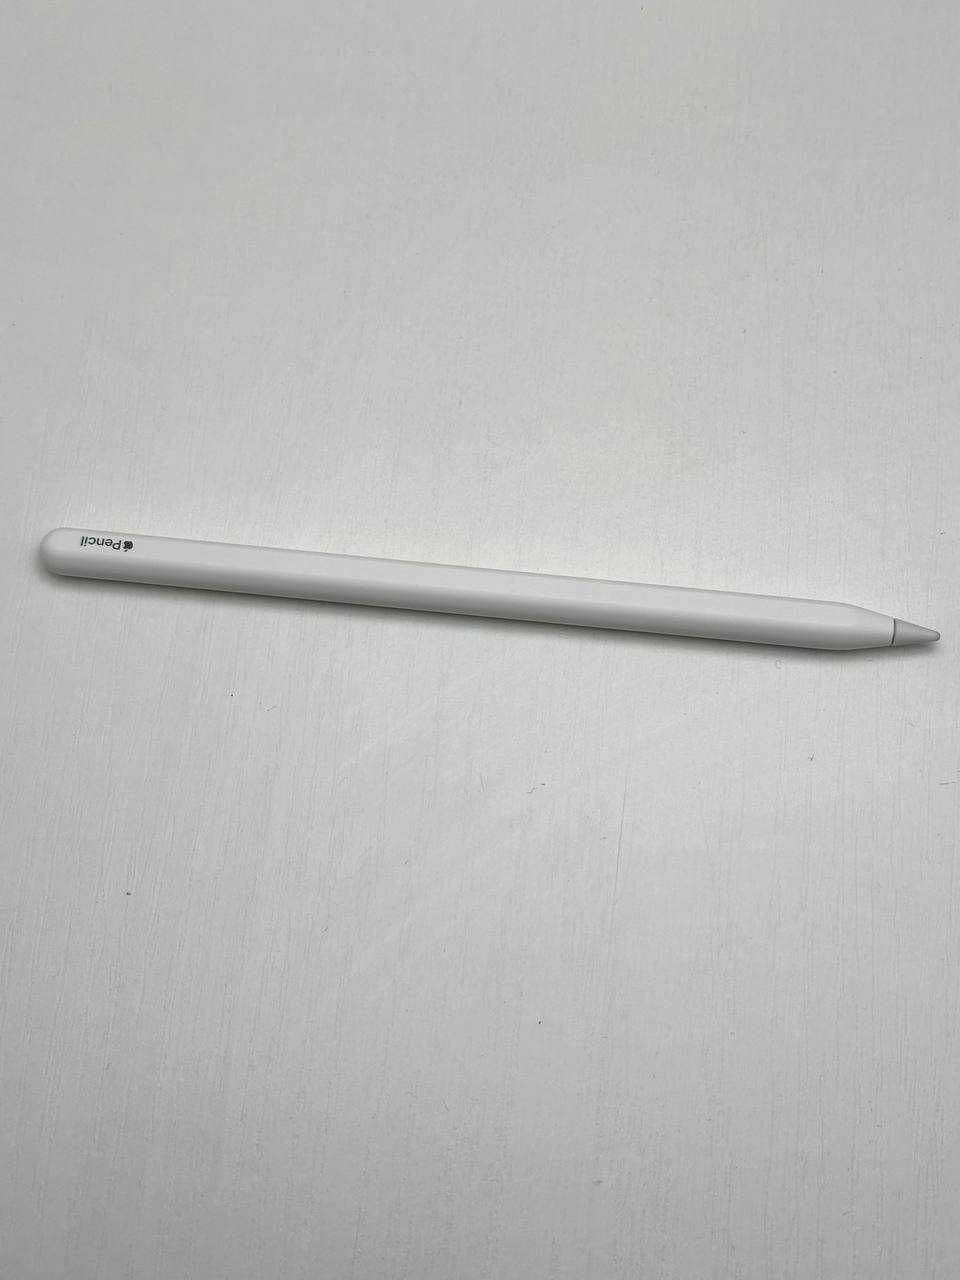 Apple Pencil 2 Maгазин/5162